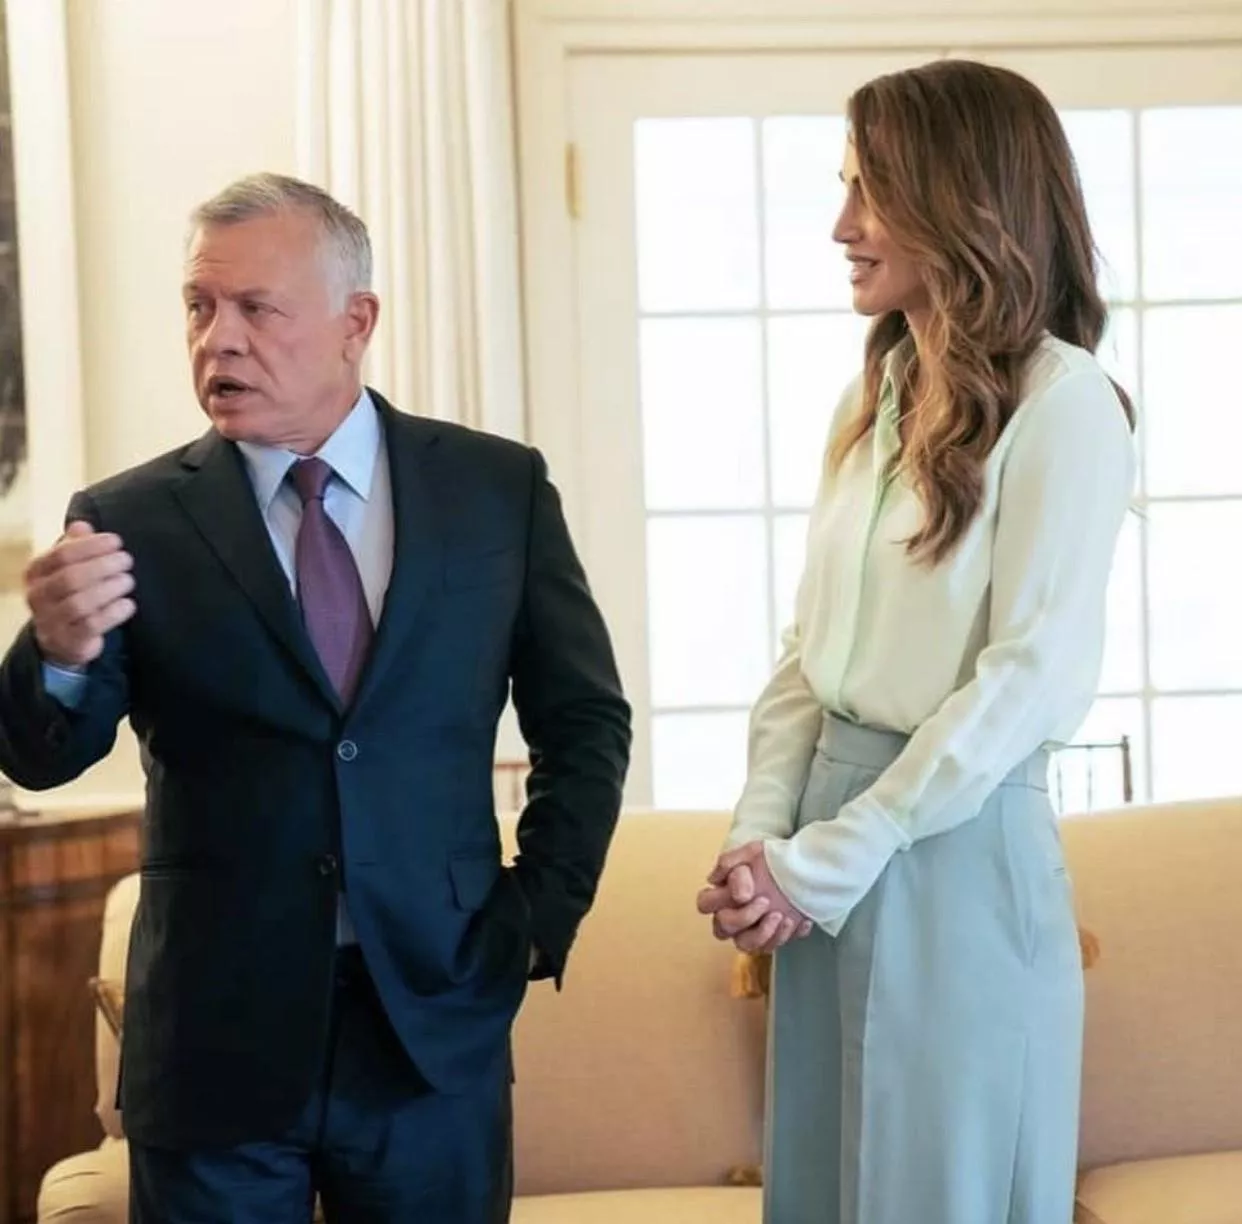 الملكة رانيا تخطف الأنظار بلوكات أنيقة وراقية في الولايات المتحدة الأميركية